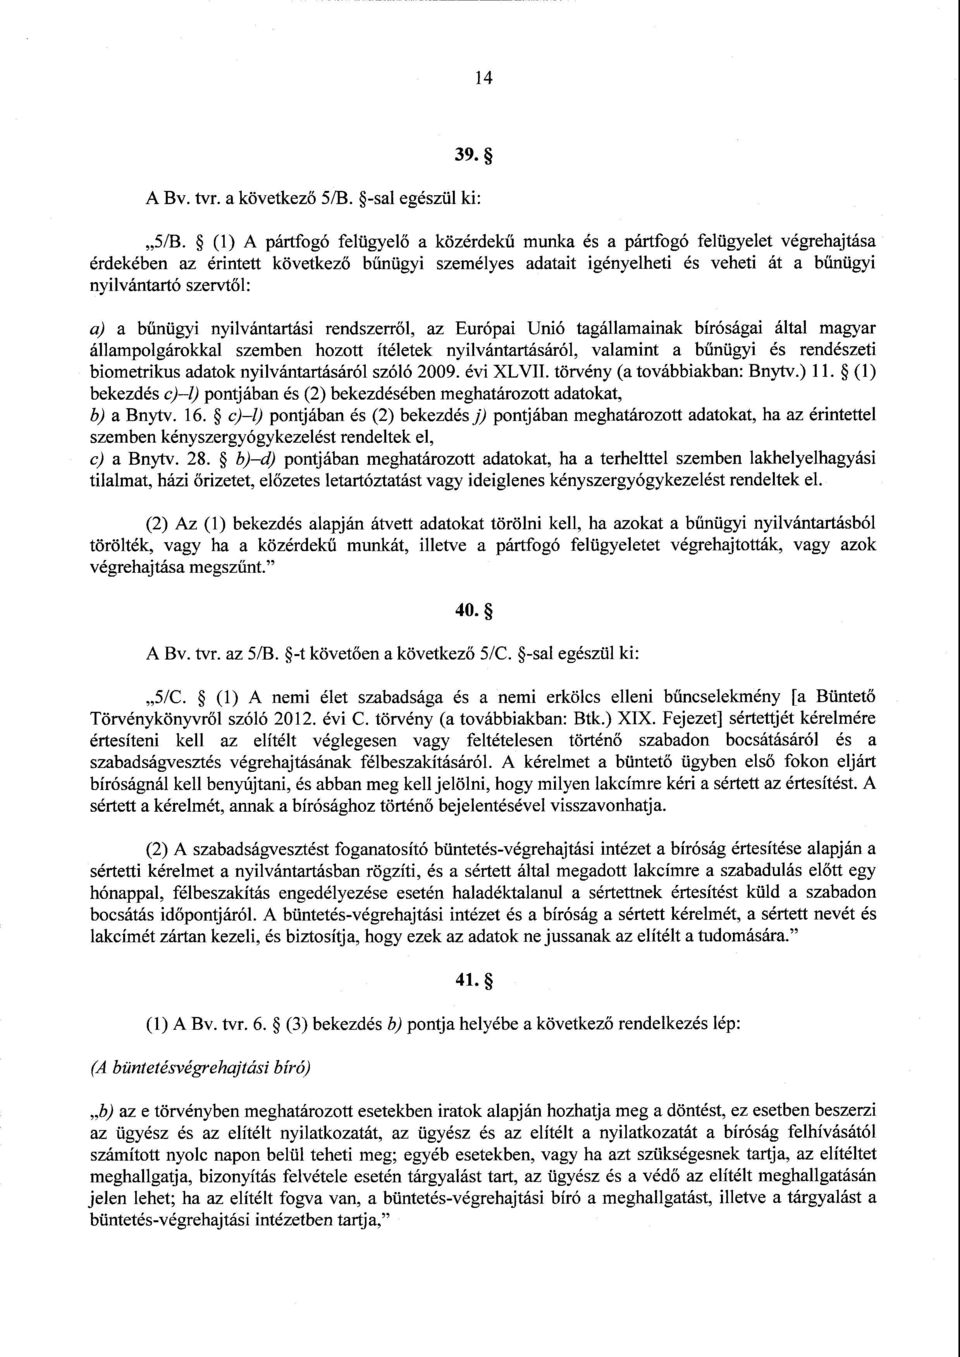 : a) a bűnügyi nyilvántartási rendszerről, az Európai Unió tagállamainak bíróságai által magyar állampolgárokkal szemben hozott ítéletek nyilvántartásáról, valamint a b űnügyi és rendészet i